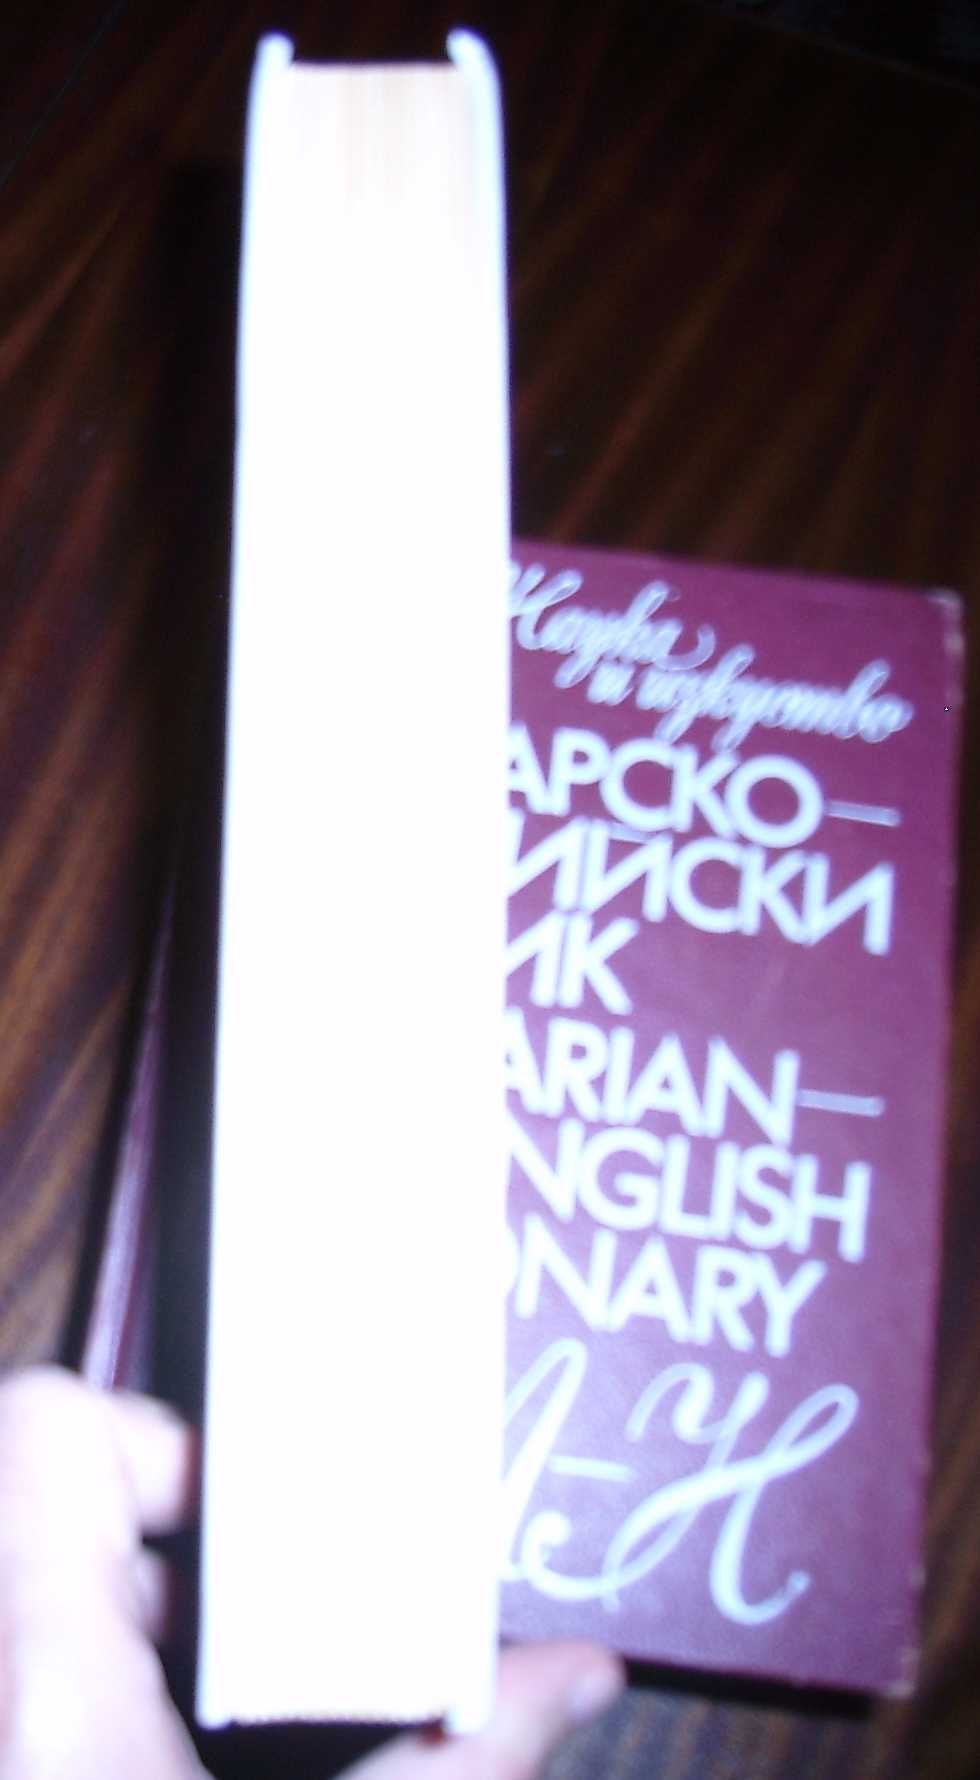 Българско-Английски речник, 2 тома - 25лв